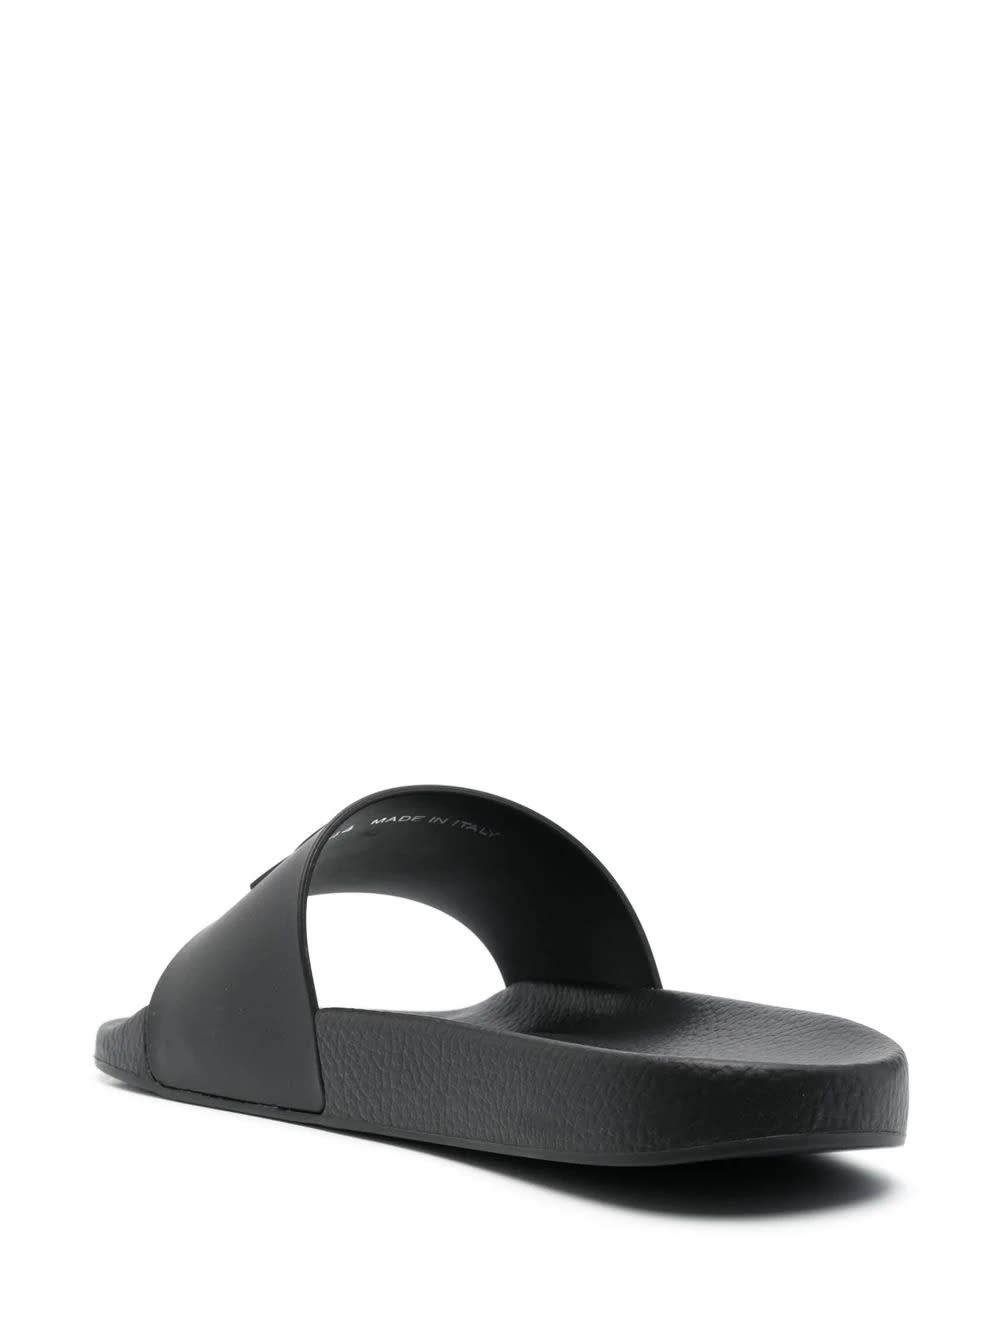 Shop Moncler Black Basile Slides